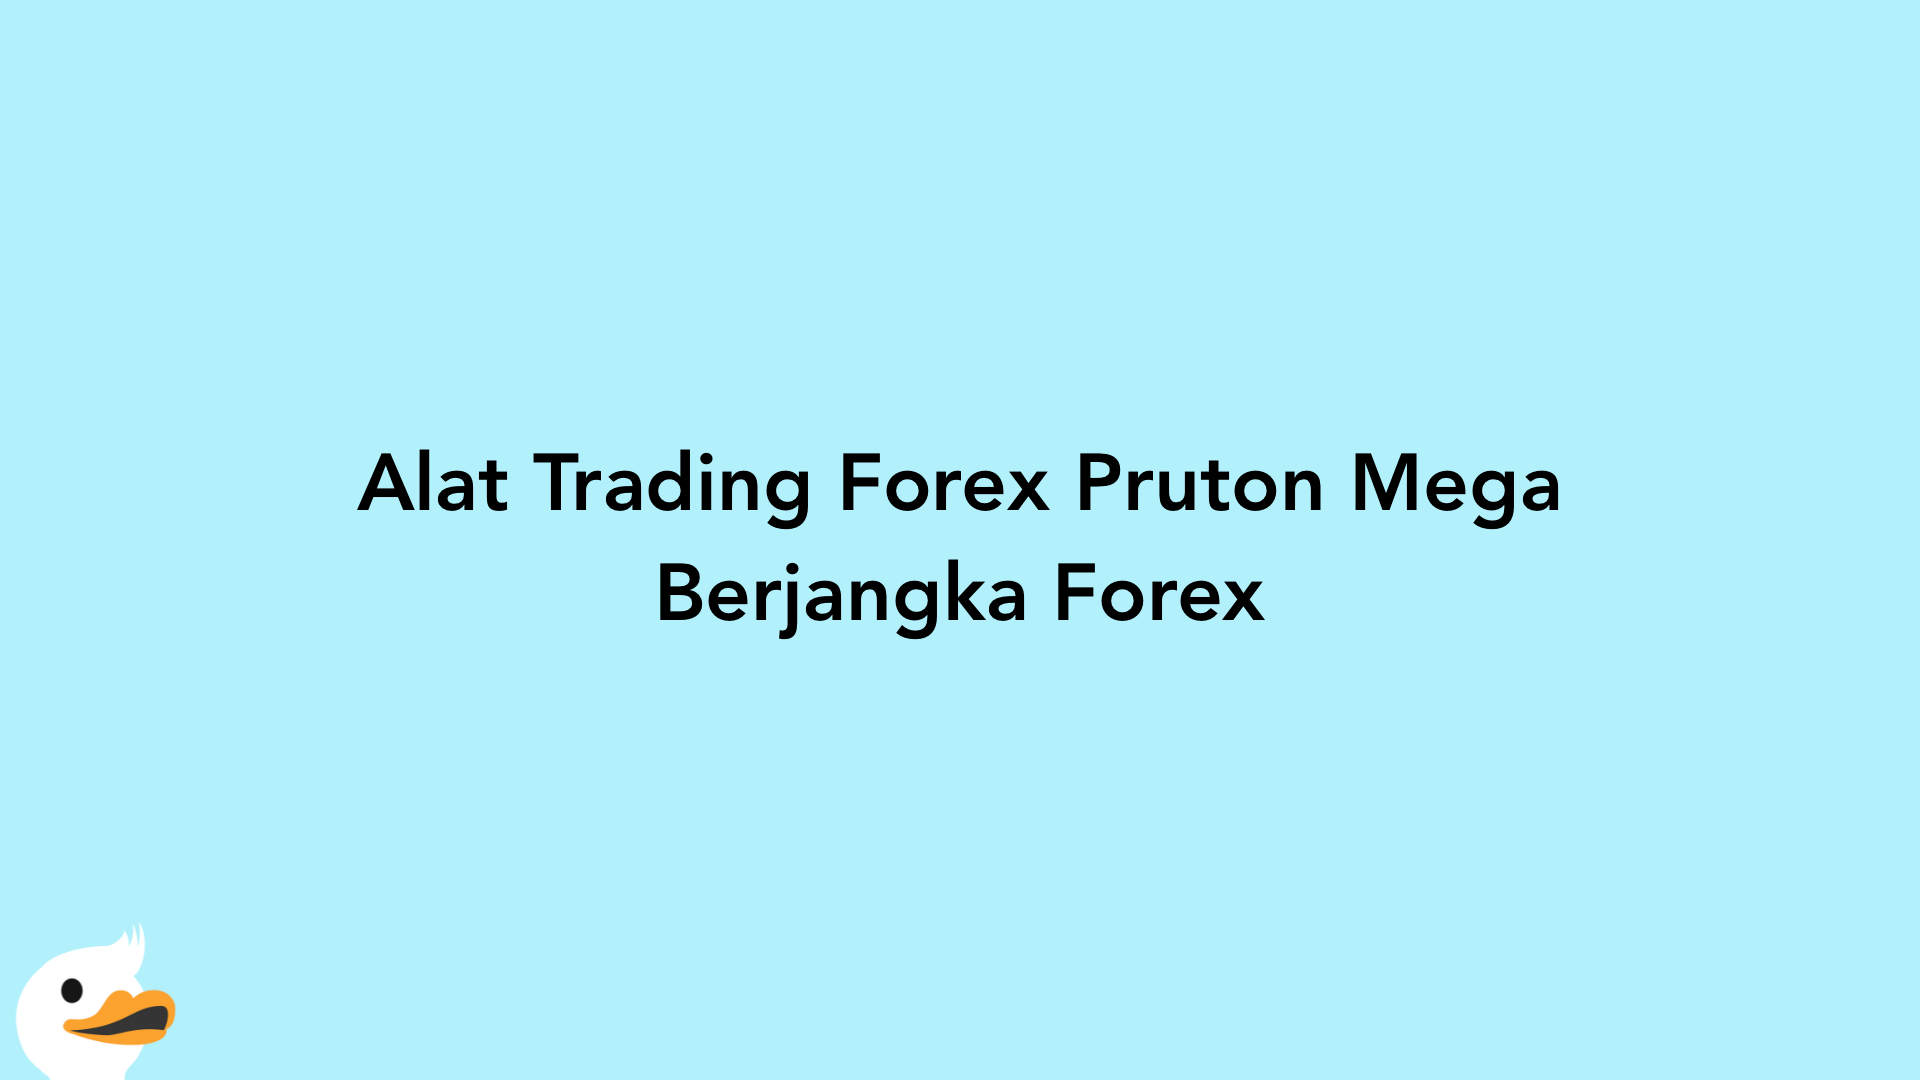 Alat Trading Forex Pruton Mega Berjangka Forex